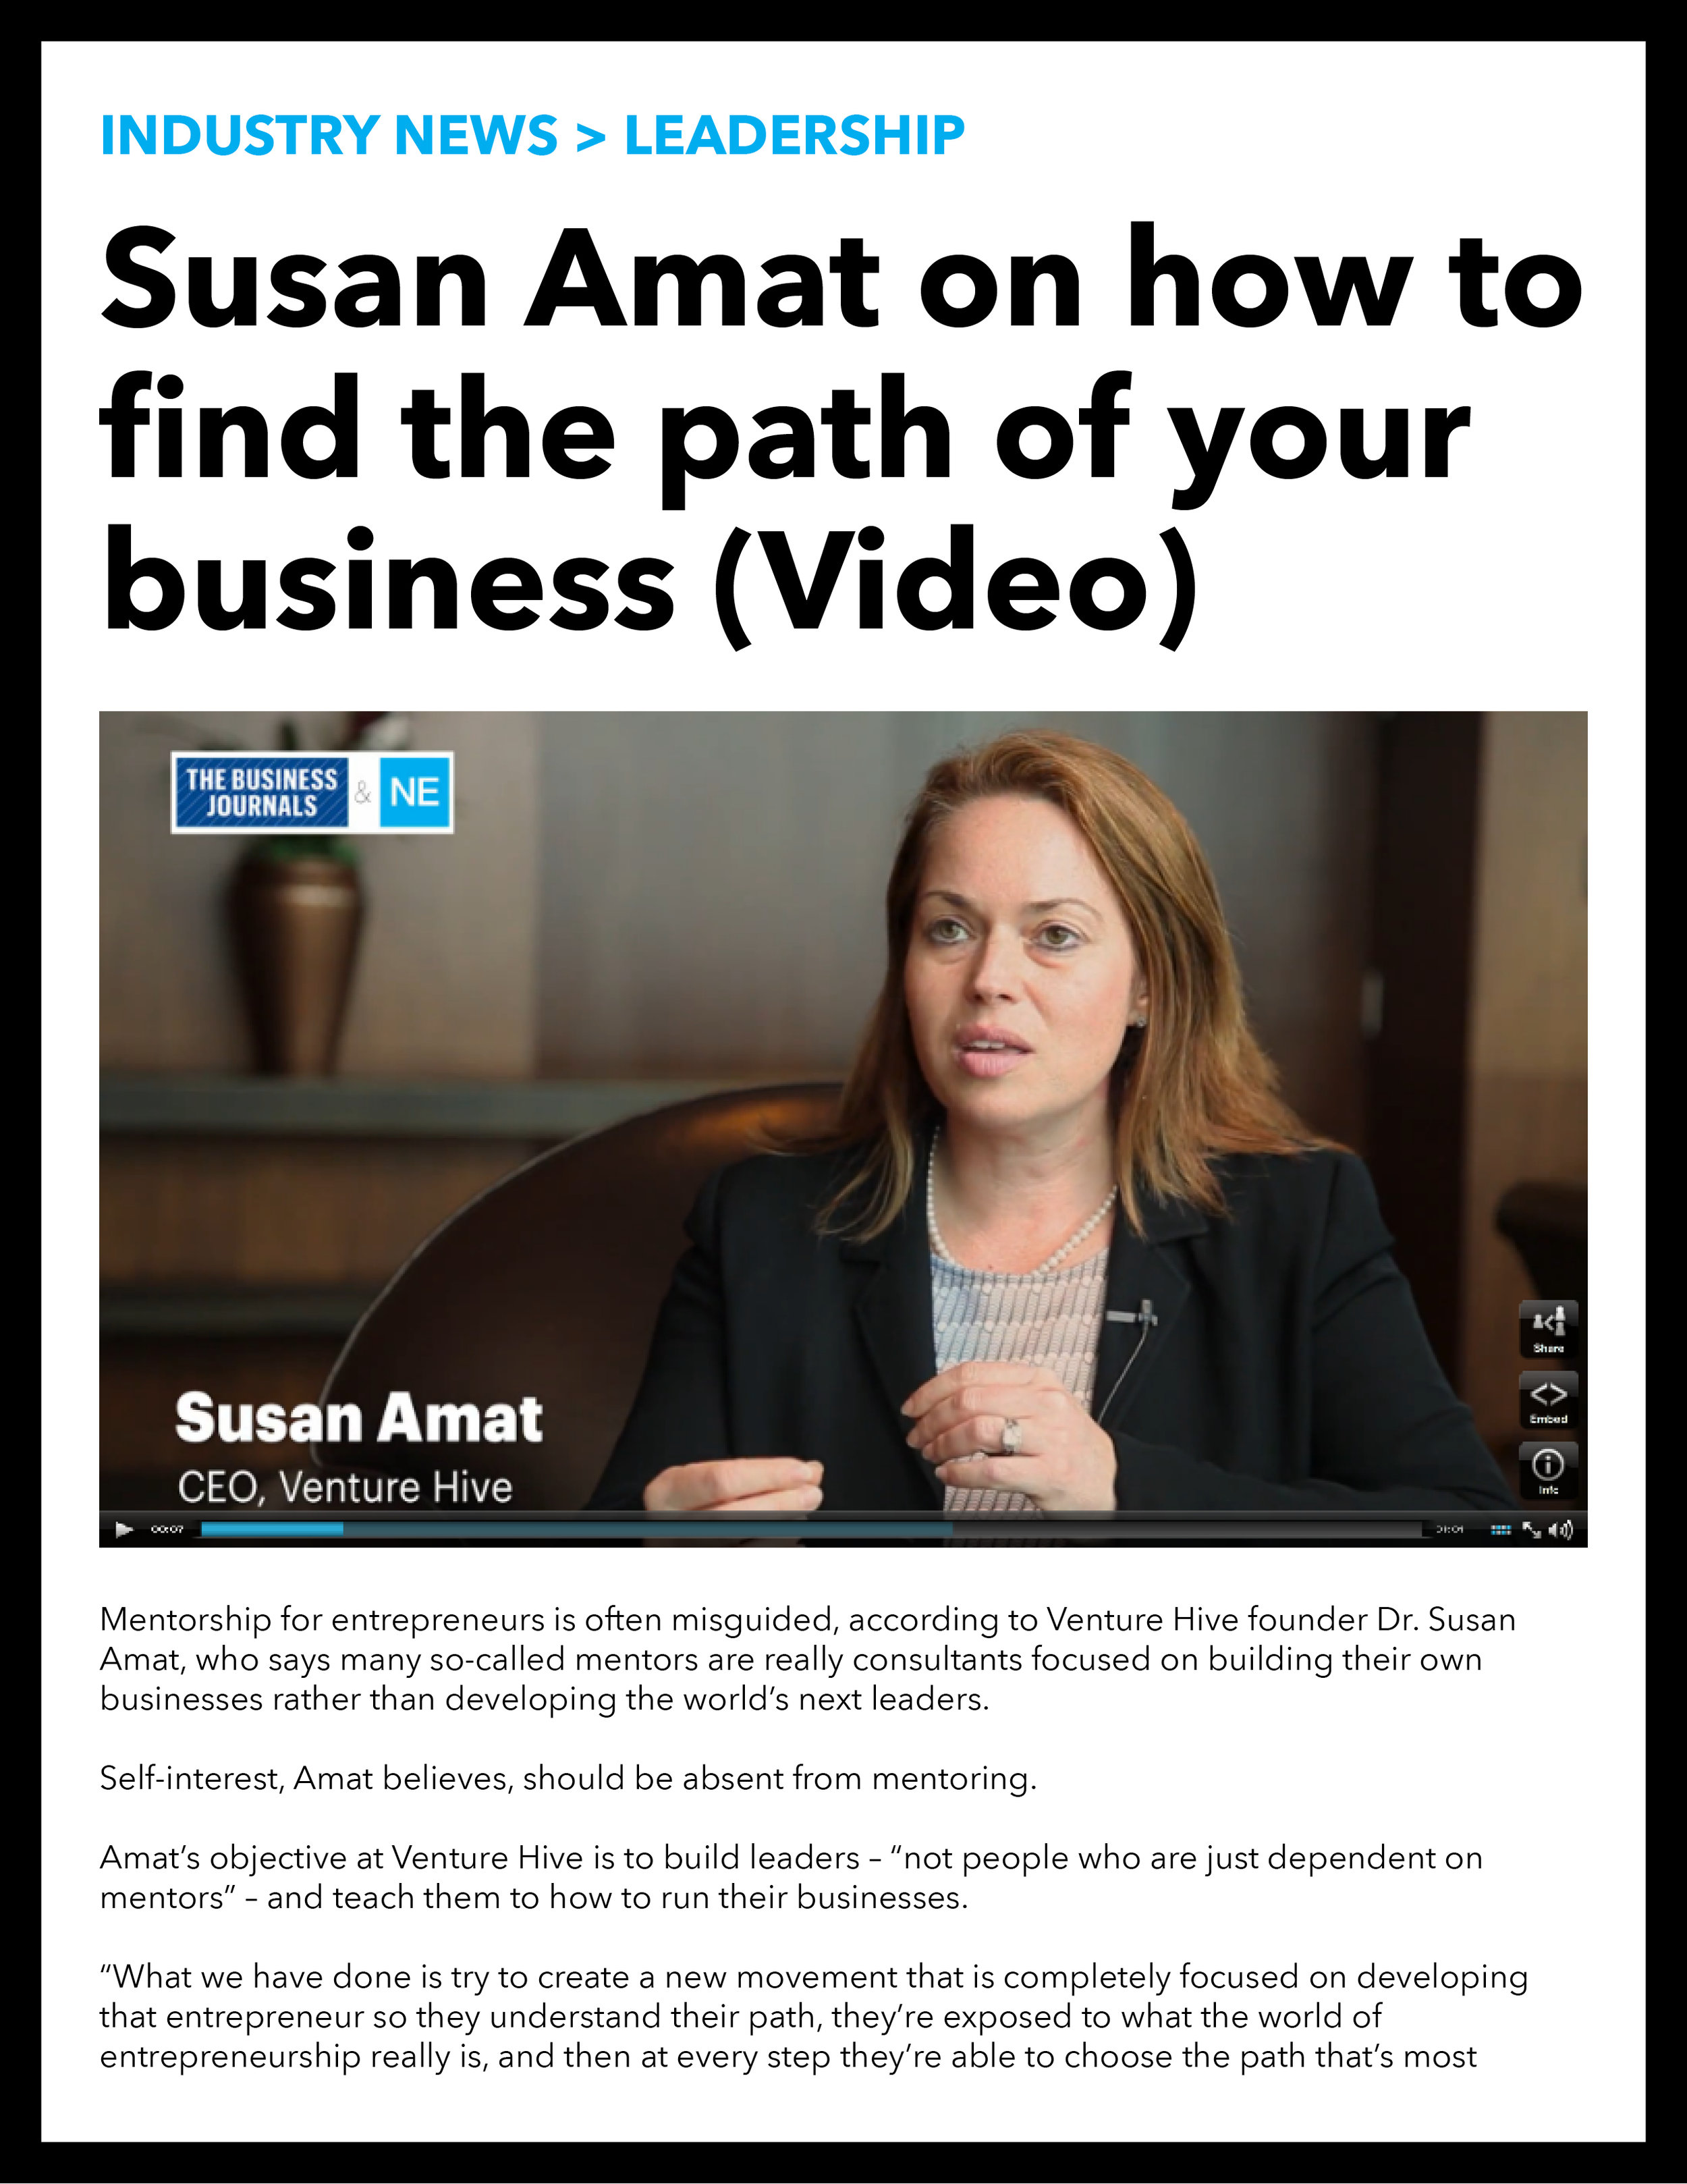 Susan Amat, CEO of Venture Hive